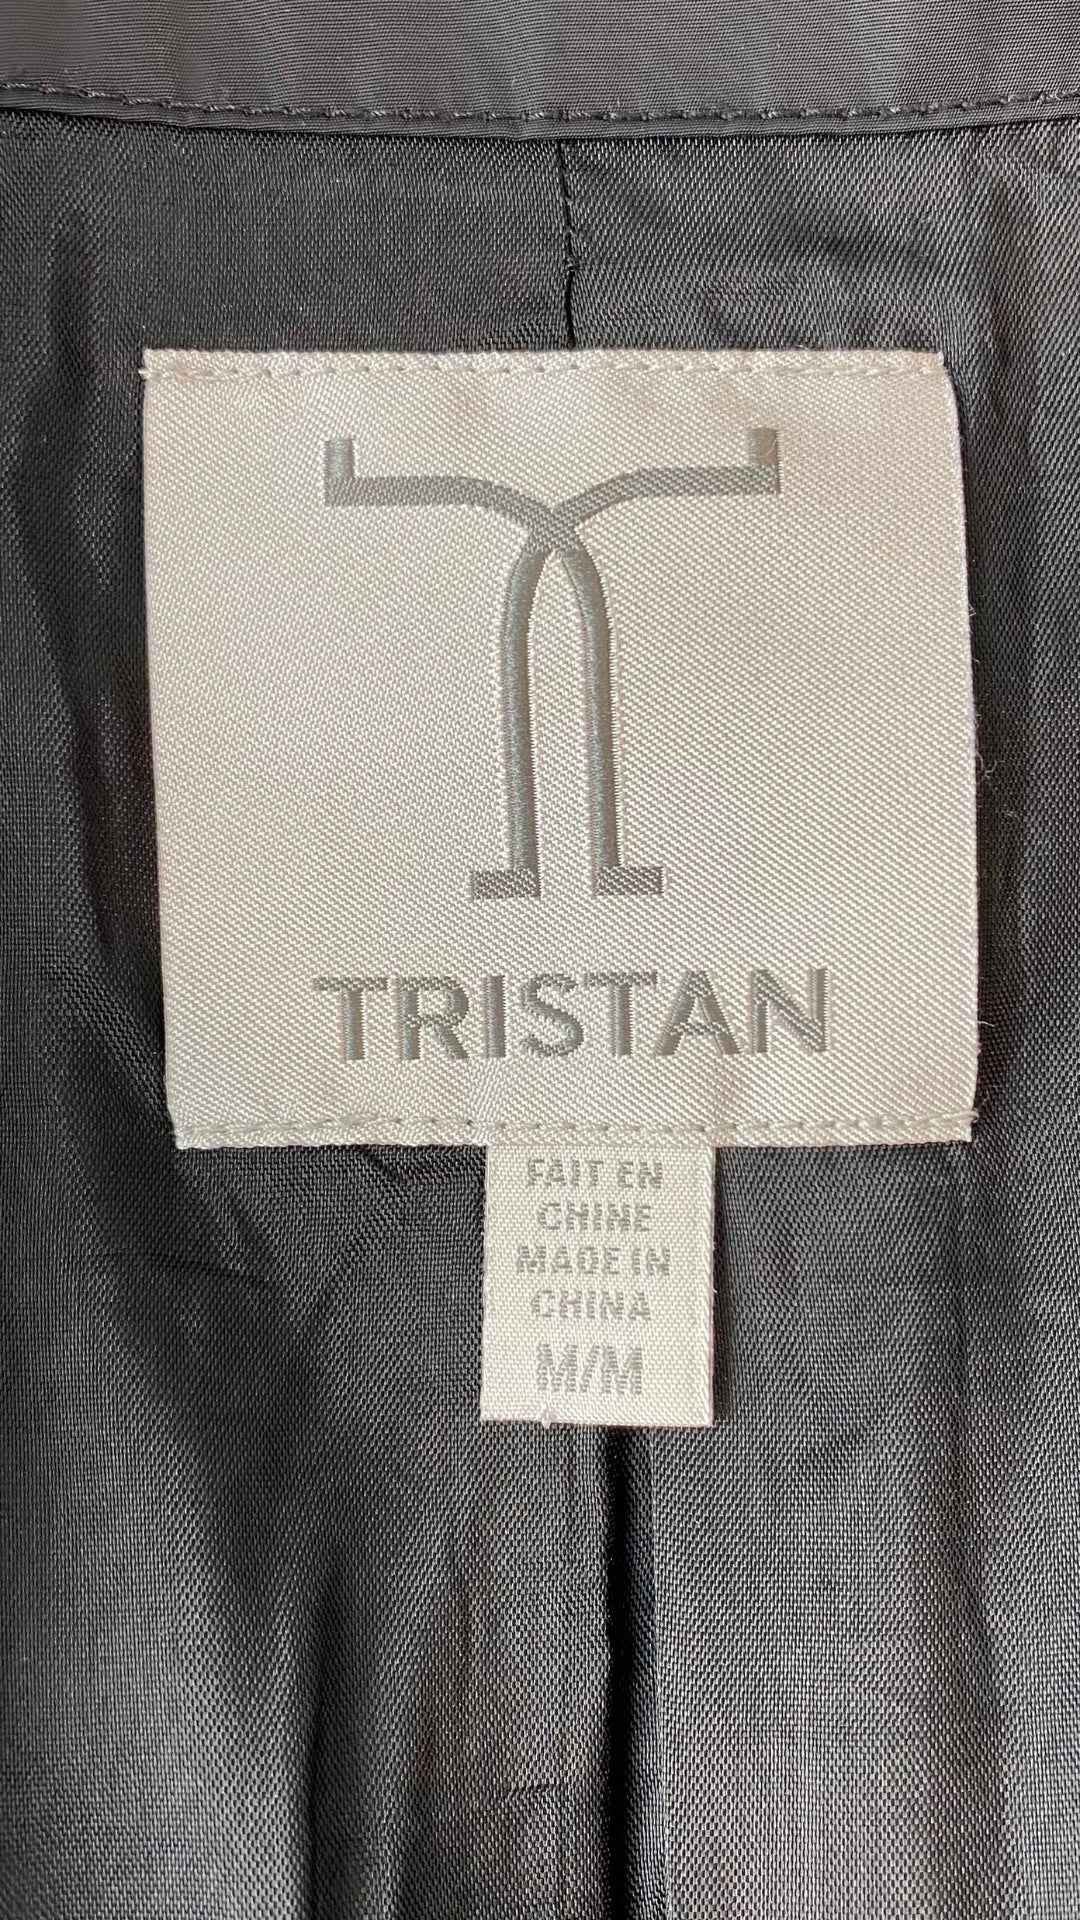 Manteau noir printanier Tristan, taille s/m. Vue de l'étiquette de marque et taille.